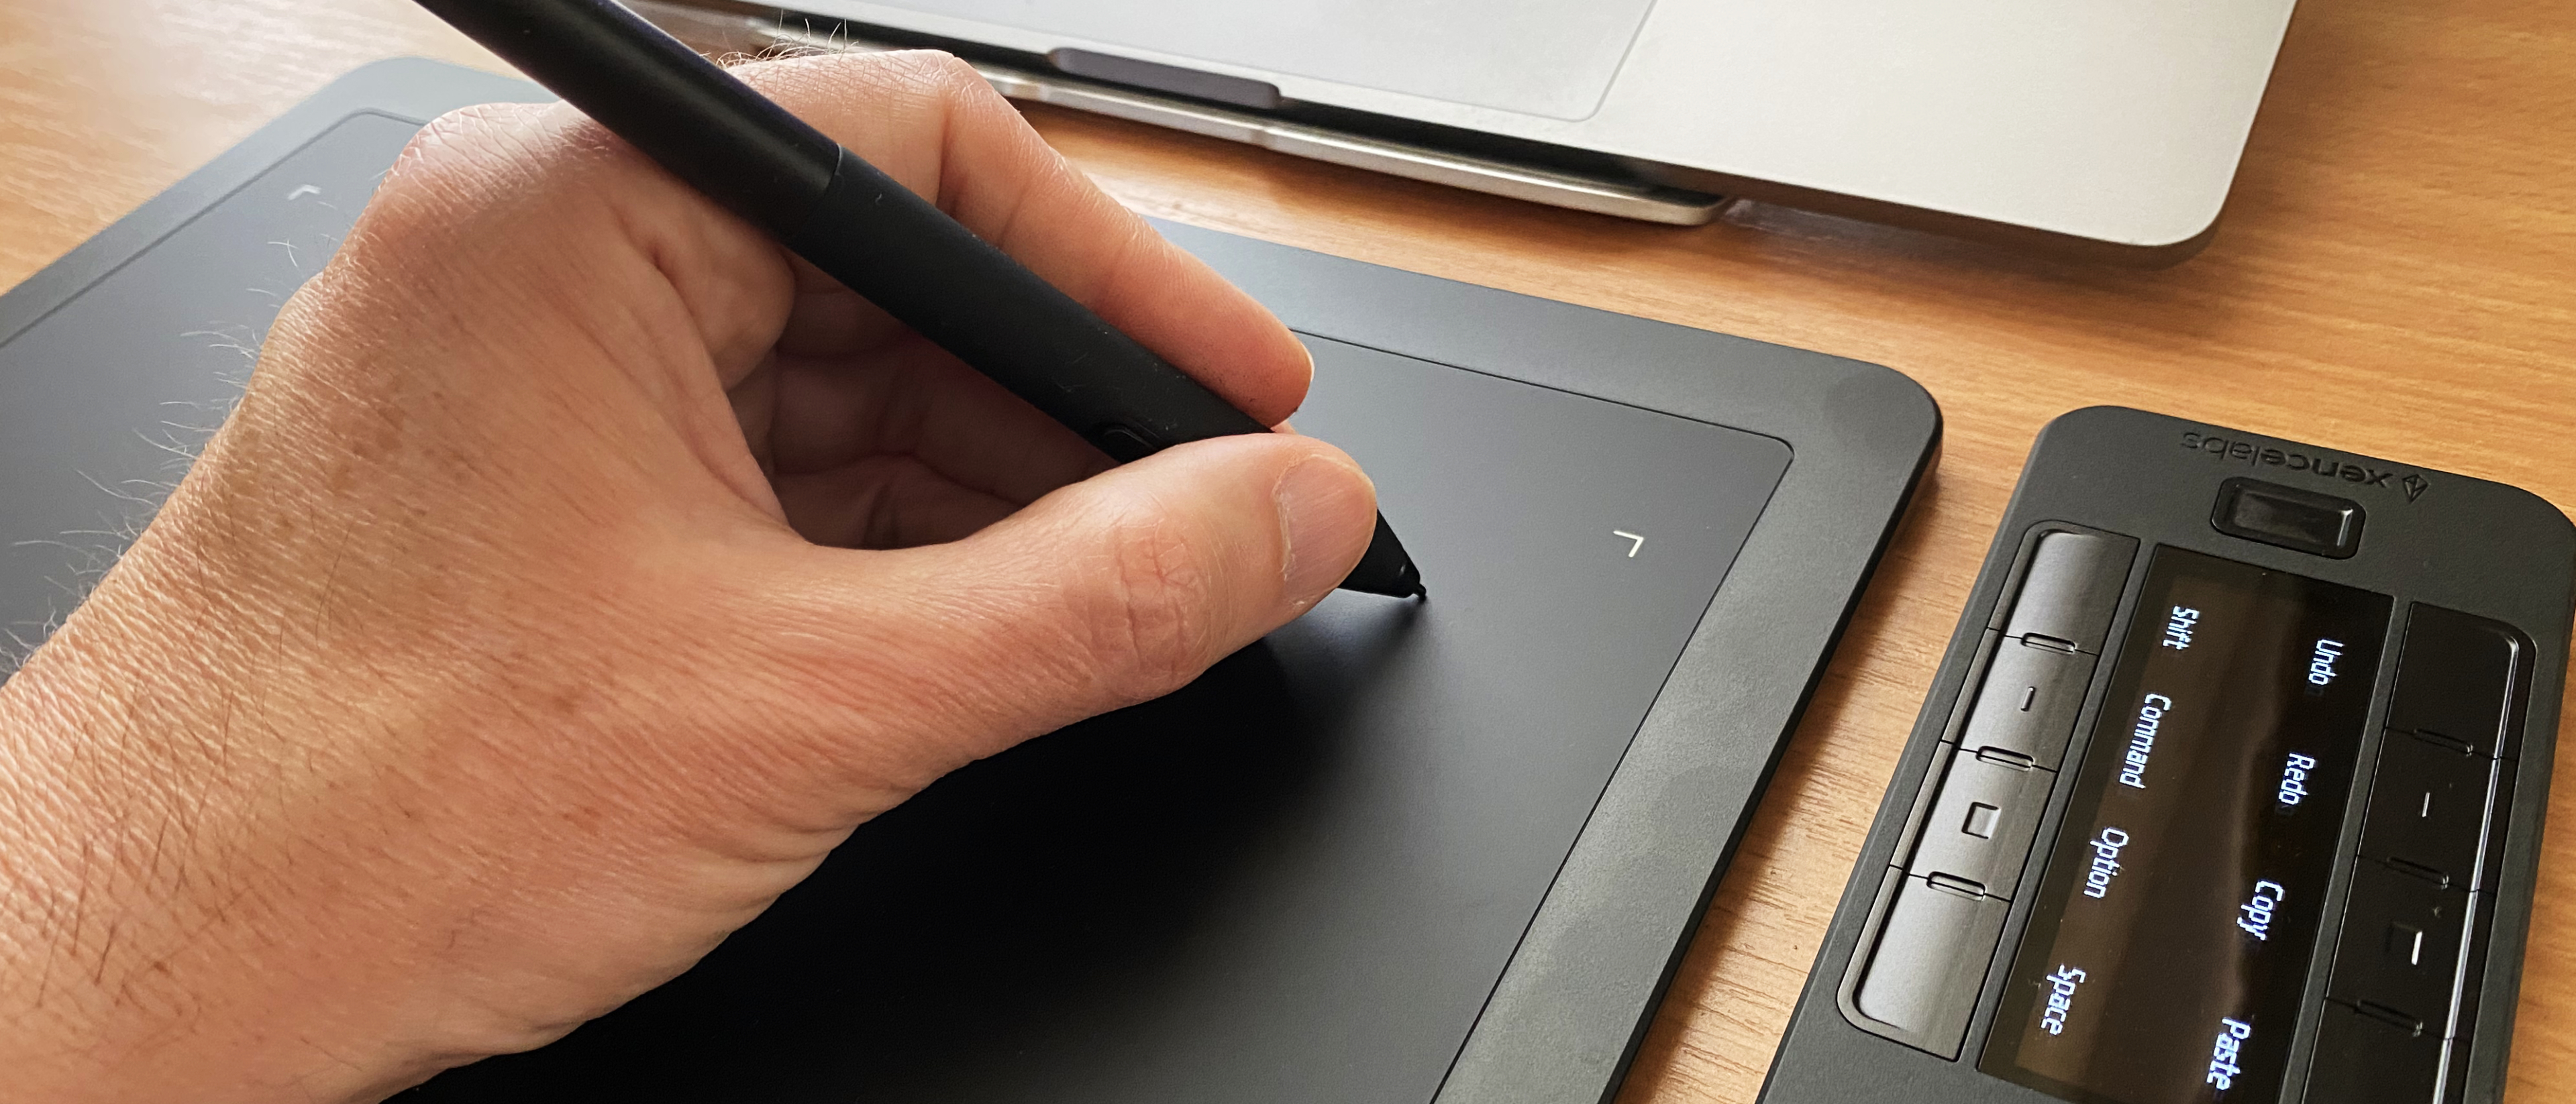 Xencelabs Pen Tablet Medium Bundle SE Review: Every Little Bit